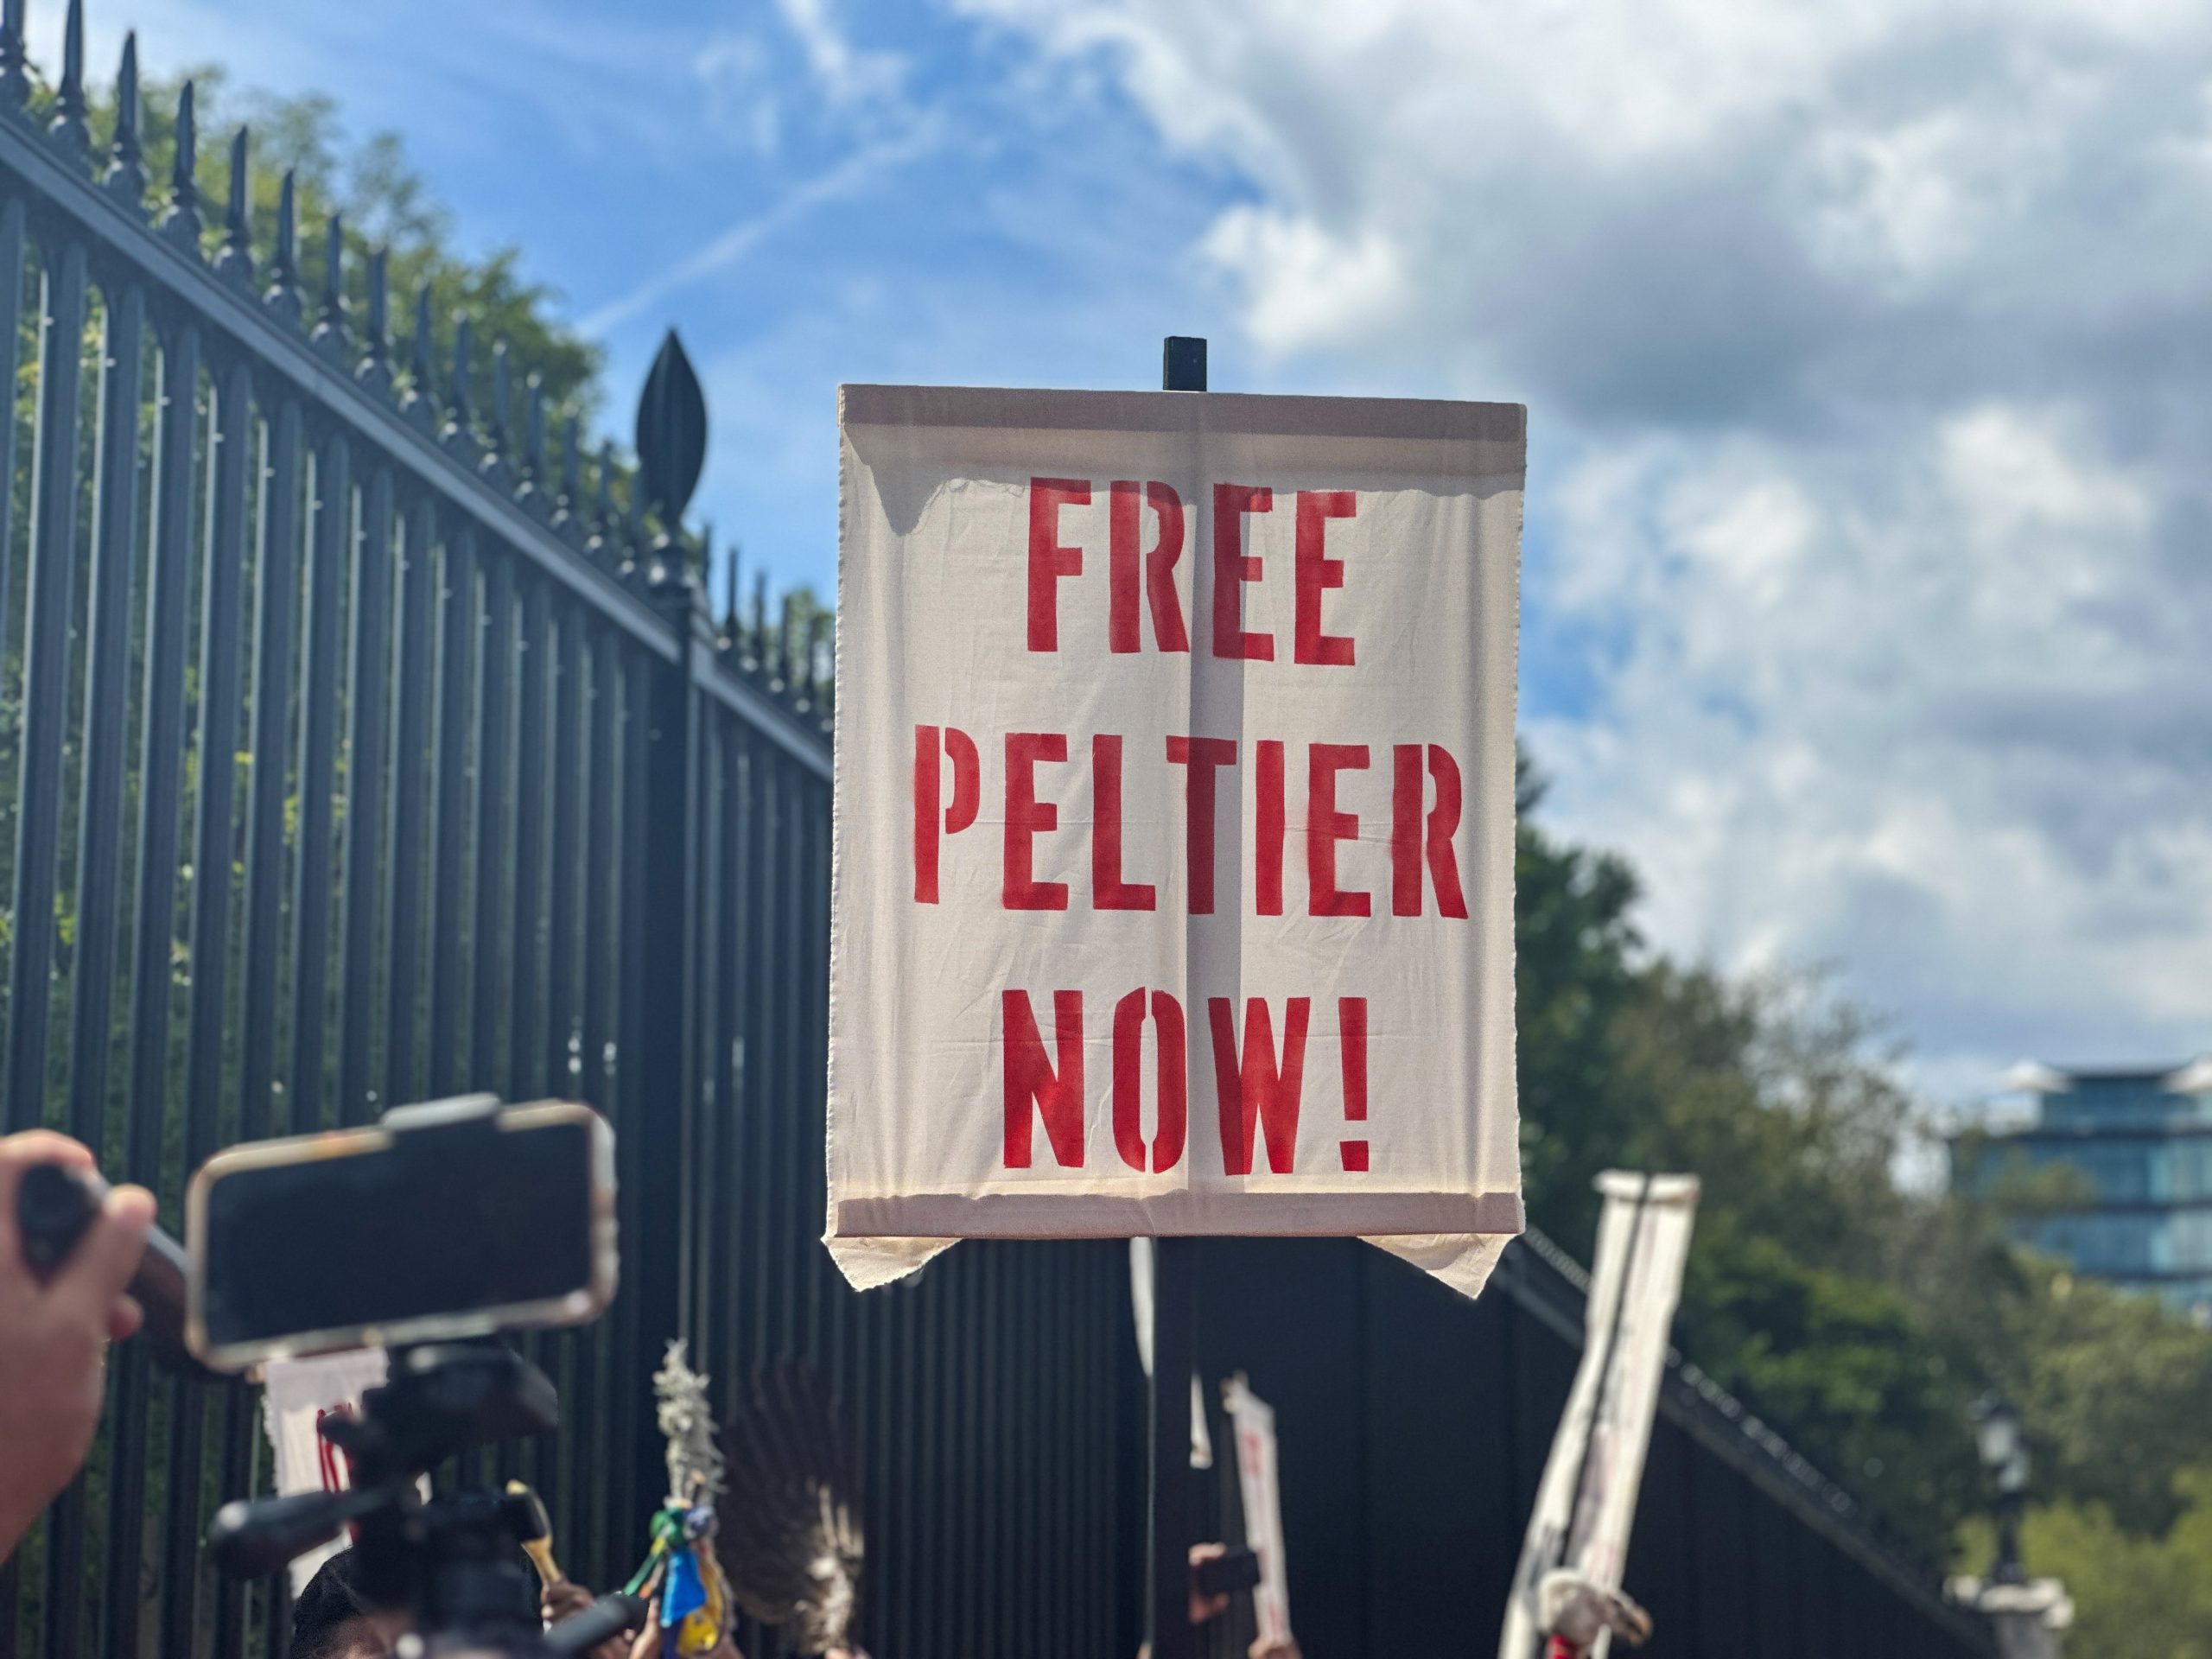 'Free Peltier Now'